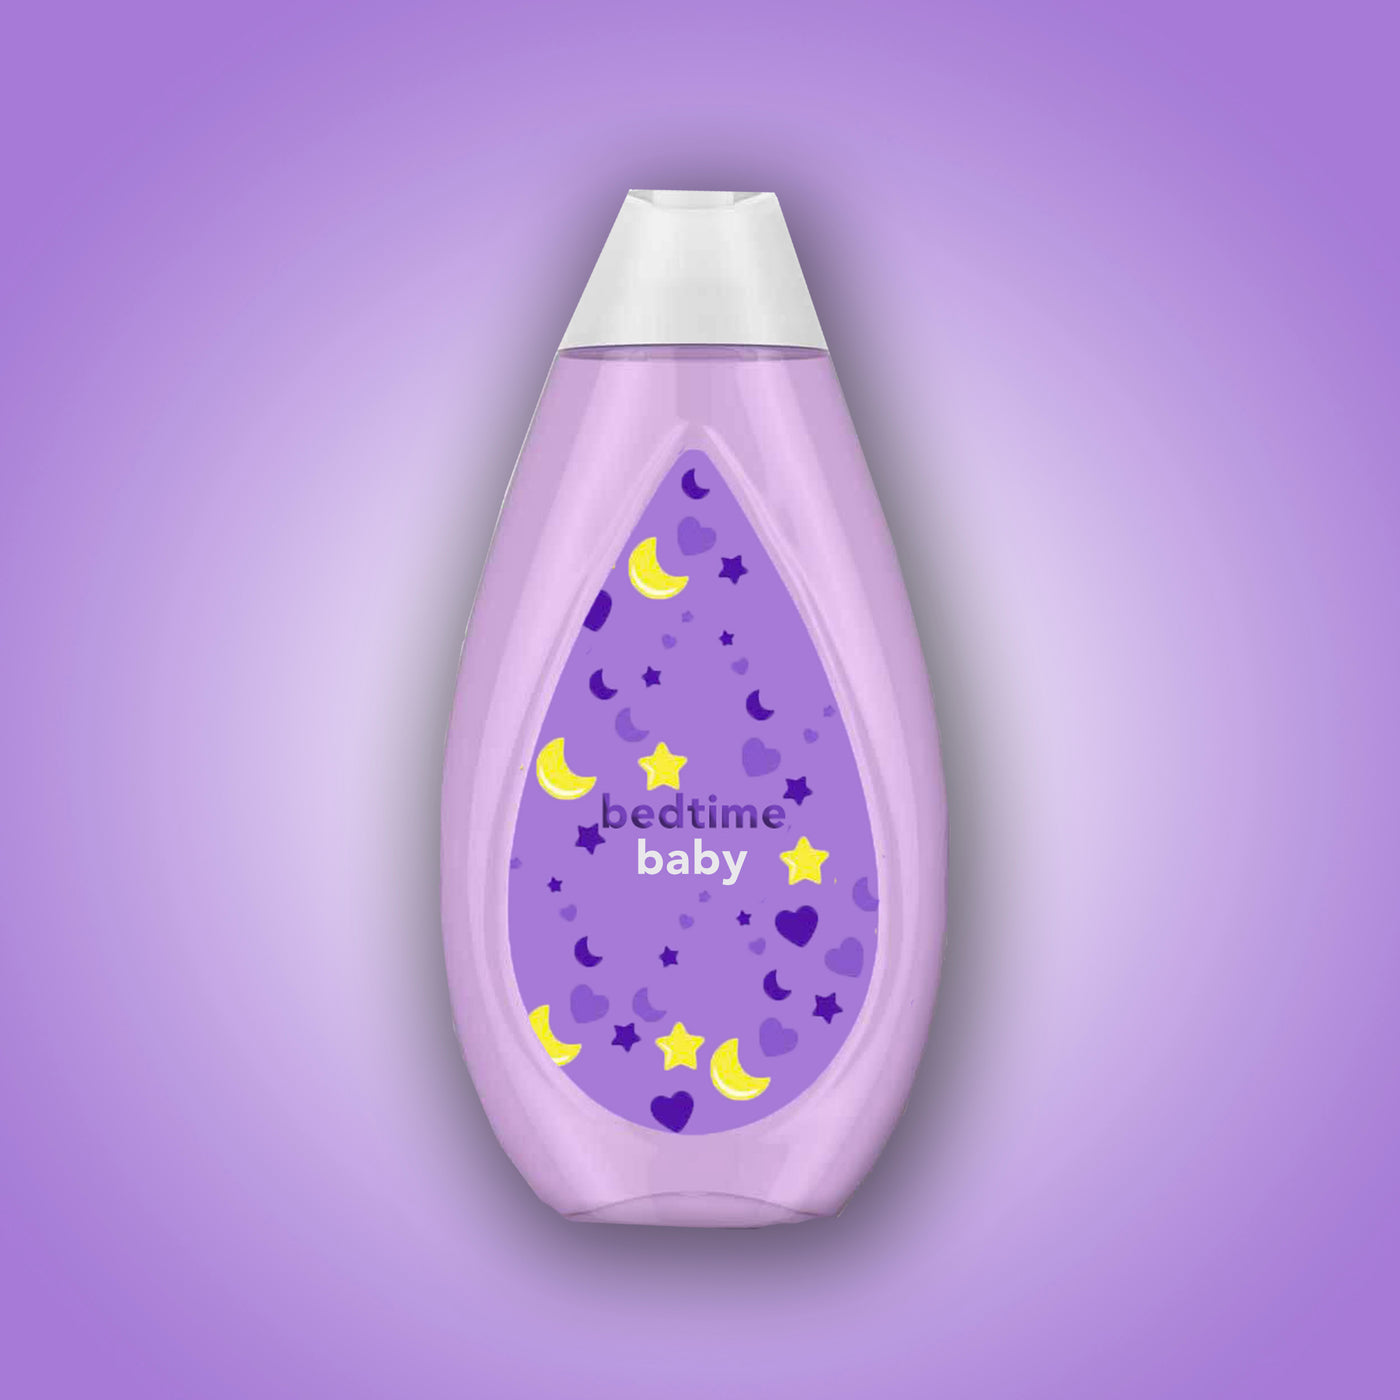 Bedtime Baby Fragrance Oil